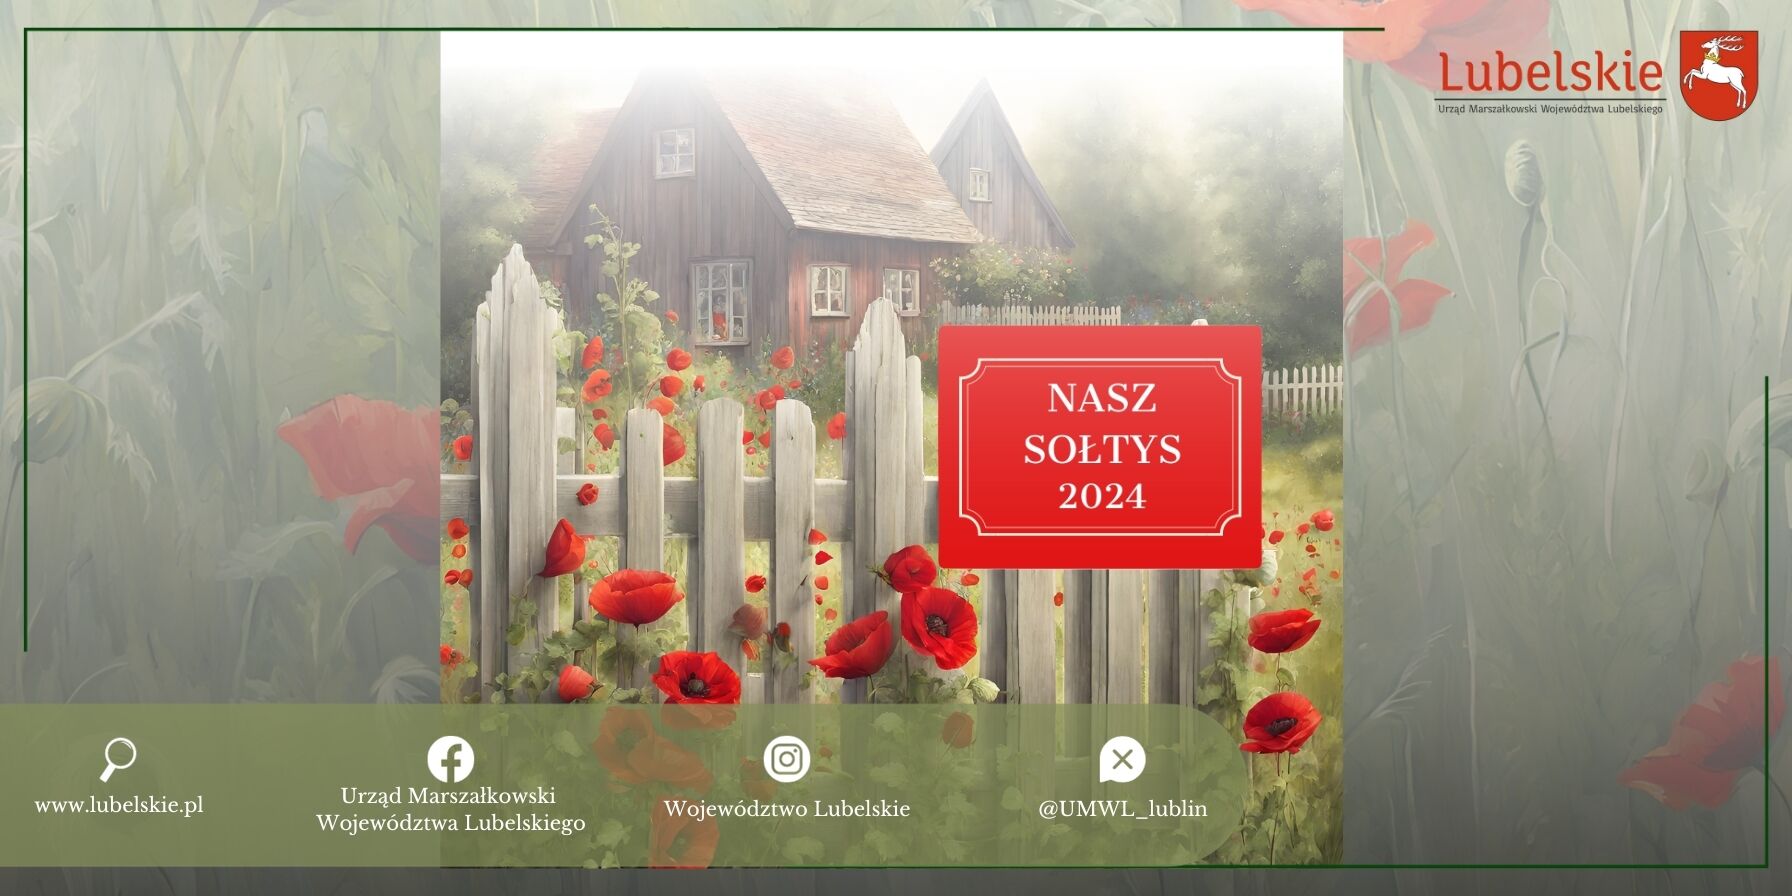 Obraz przedstawia sielski krajobraz wiejski z drewnianym domem w tle. Za białym, drewnianym płotem rosną czerwone maki. Na obrazie widoczne są logotypy i napis "NASZ SOŁTYS 2024".